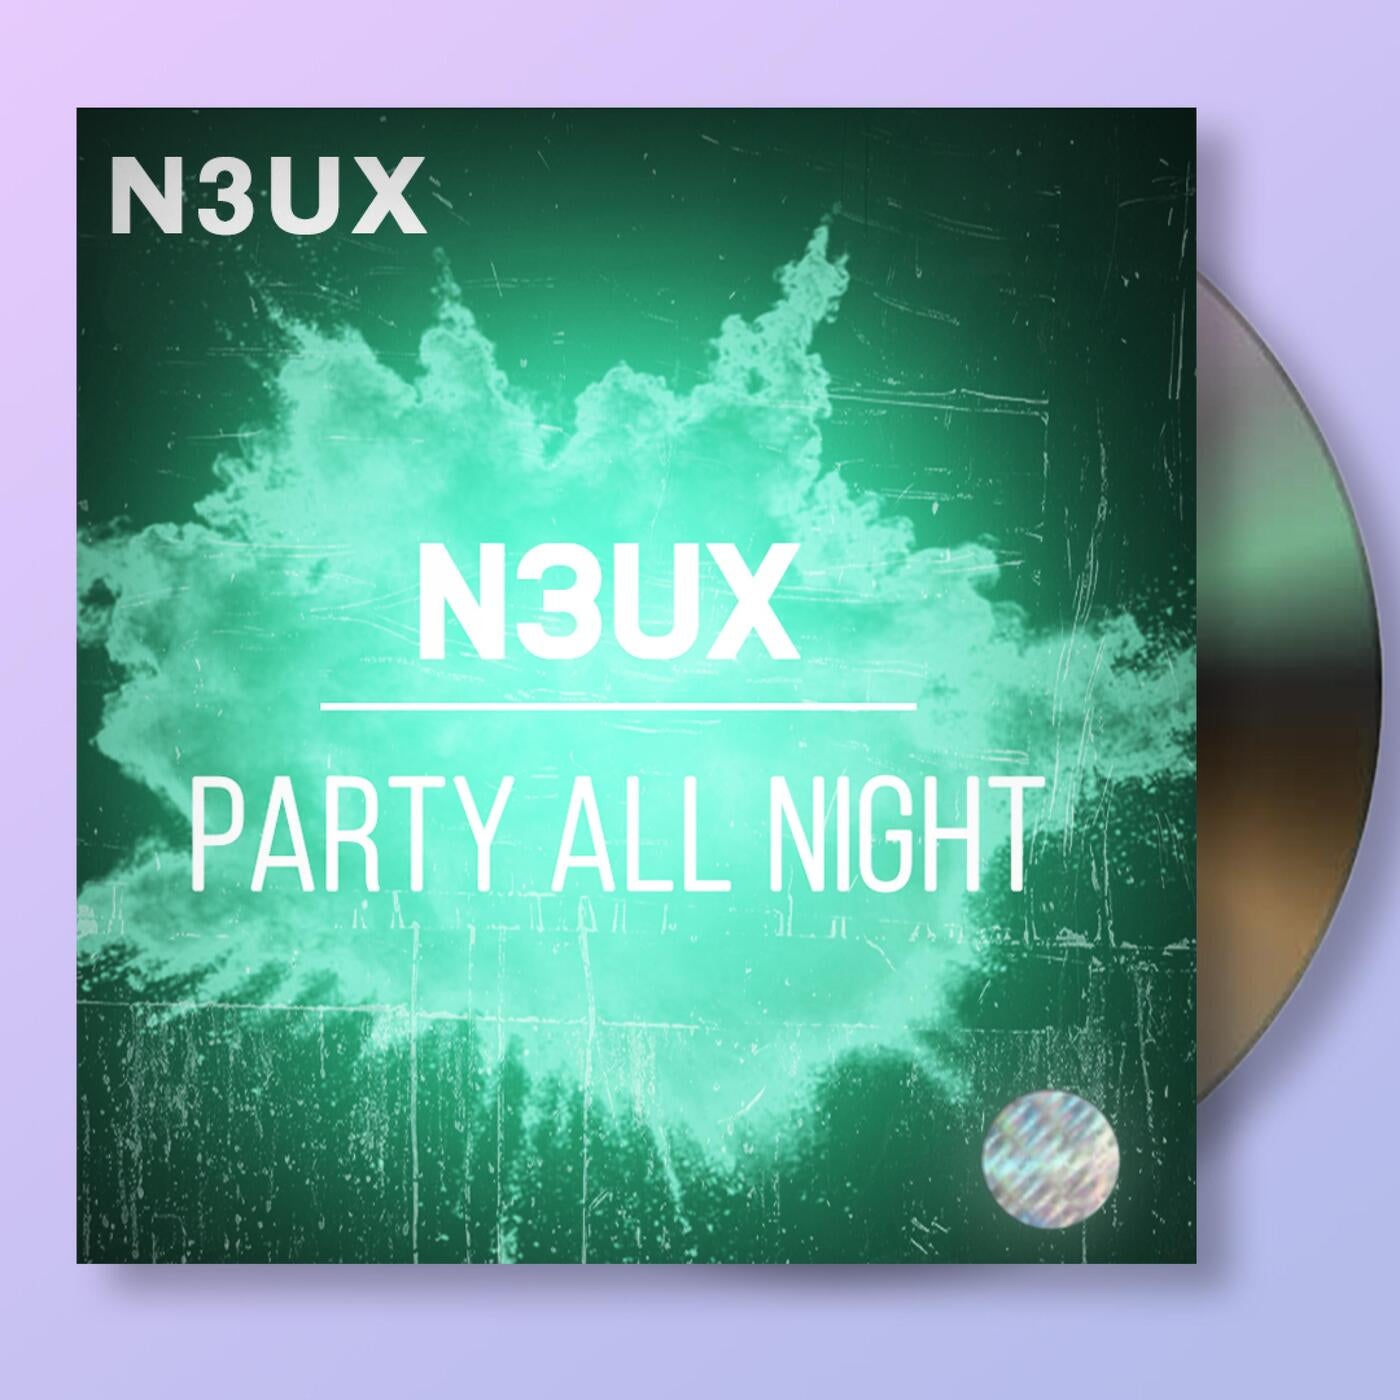 N3UX music download - Beatport